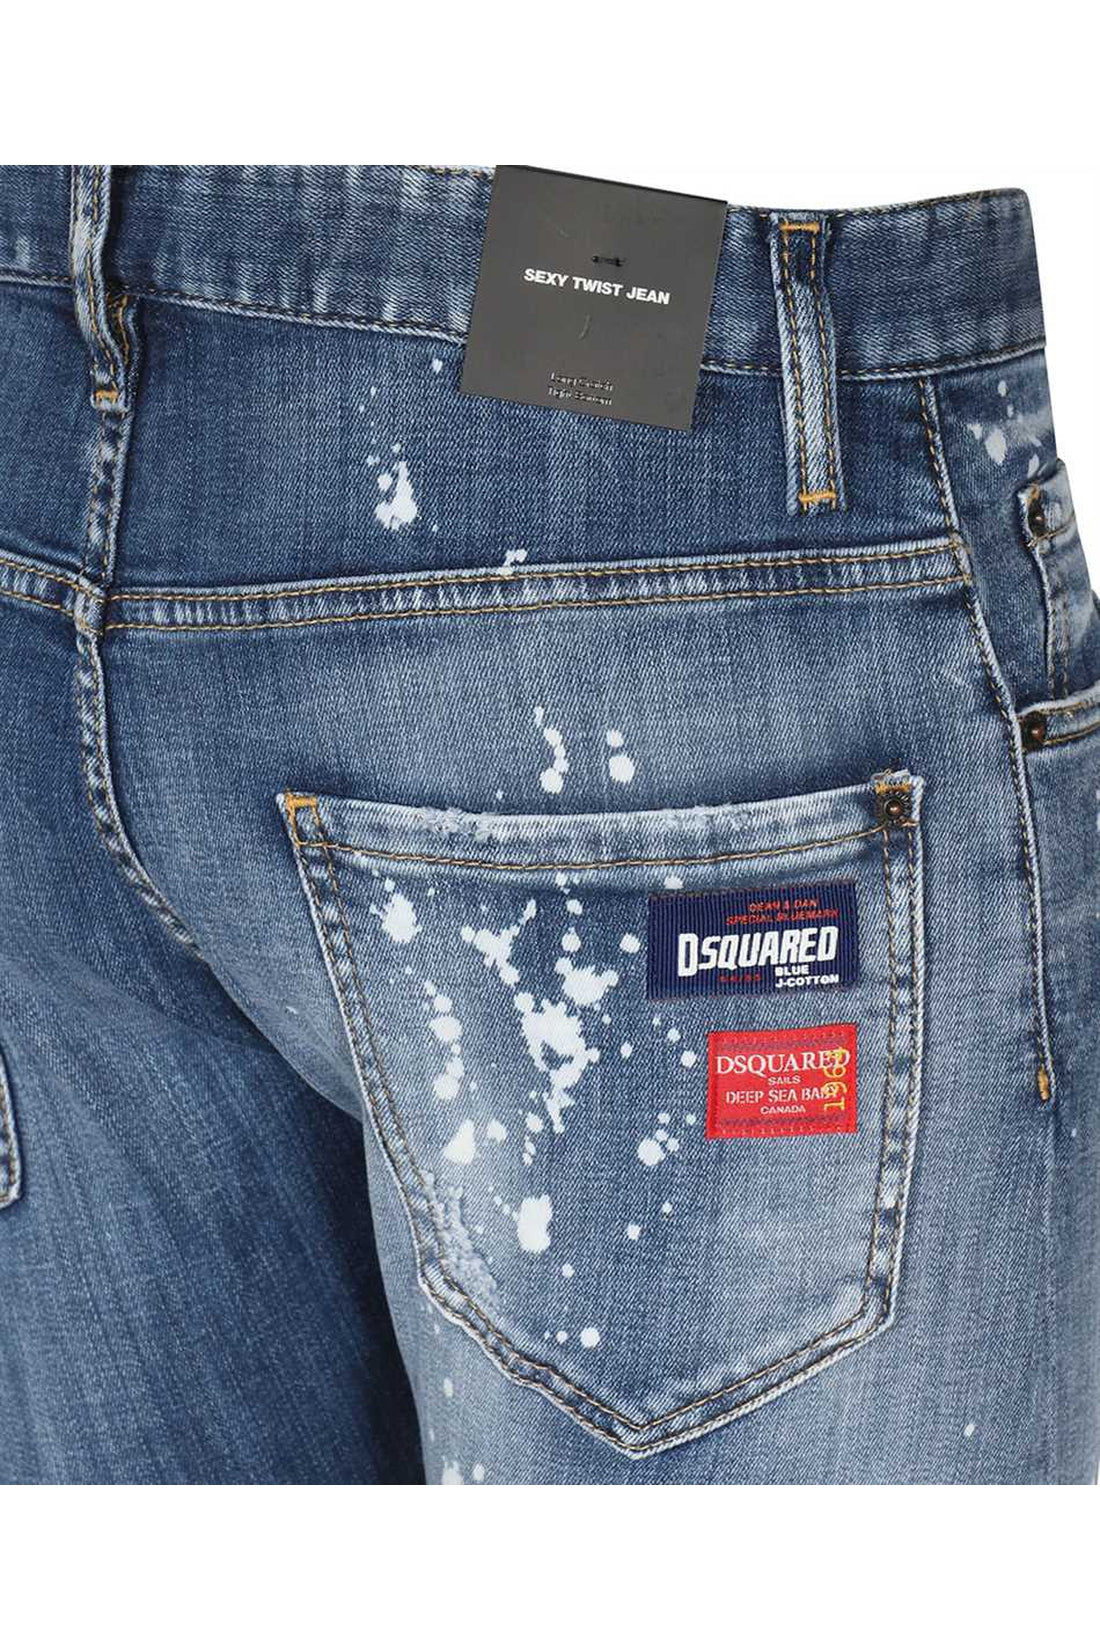 Dsquared2-OUTLET-SALE-Sexy Twist jeans-ARCHIVIST